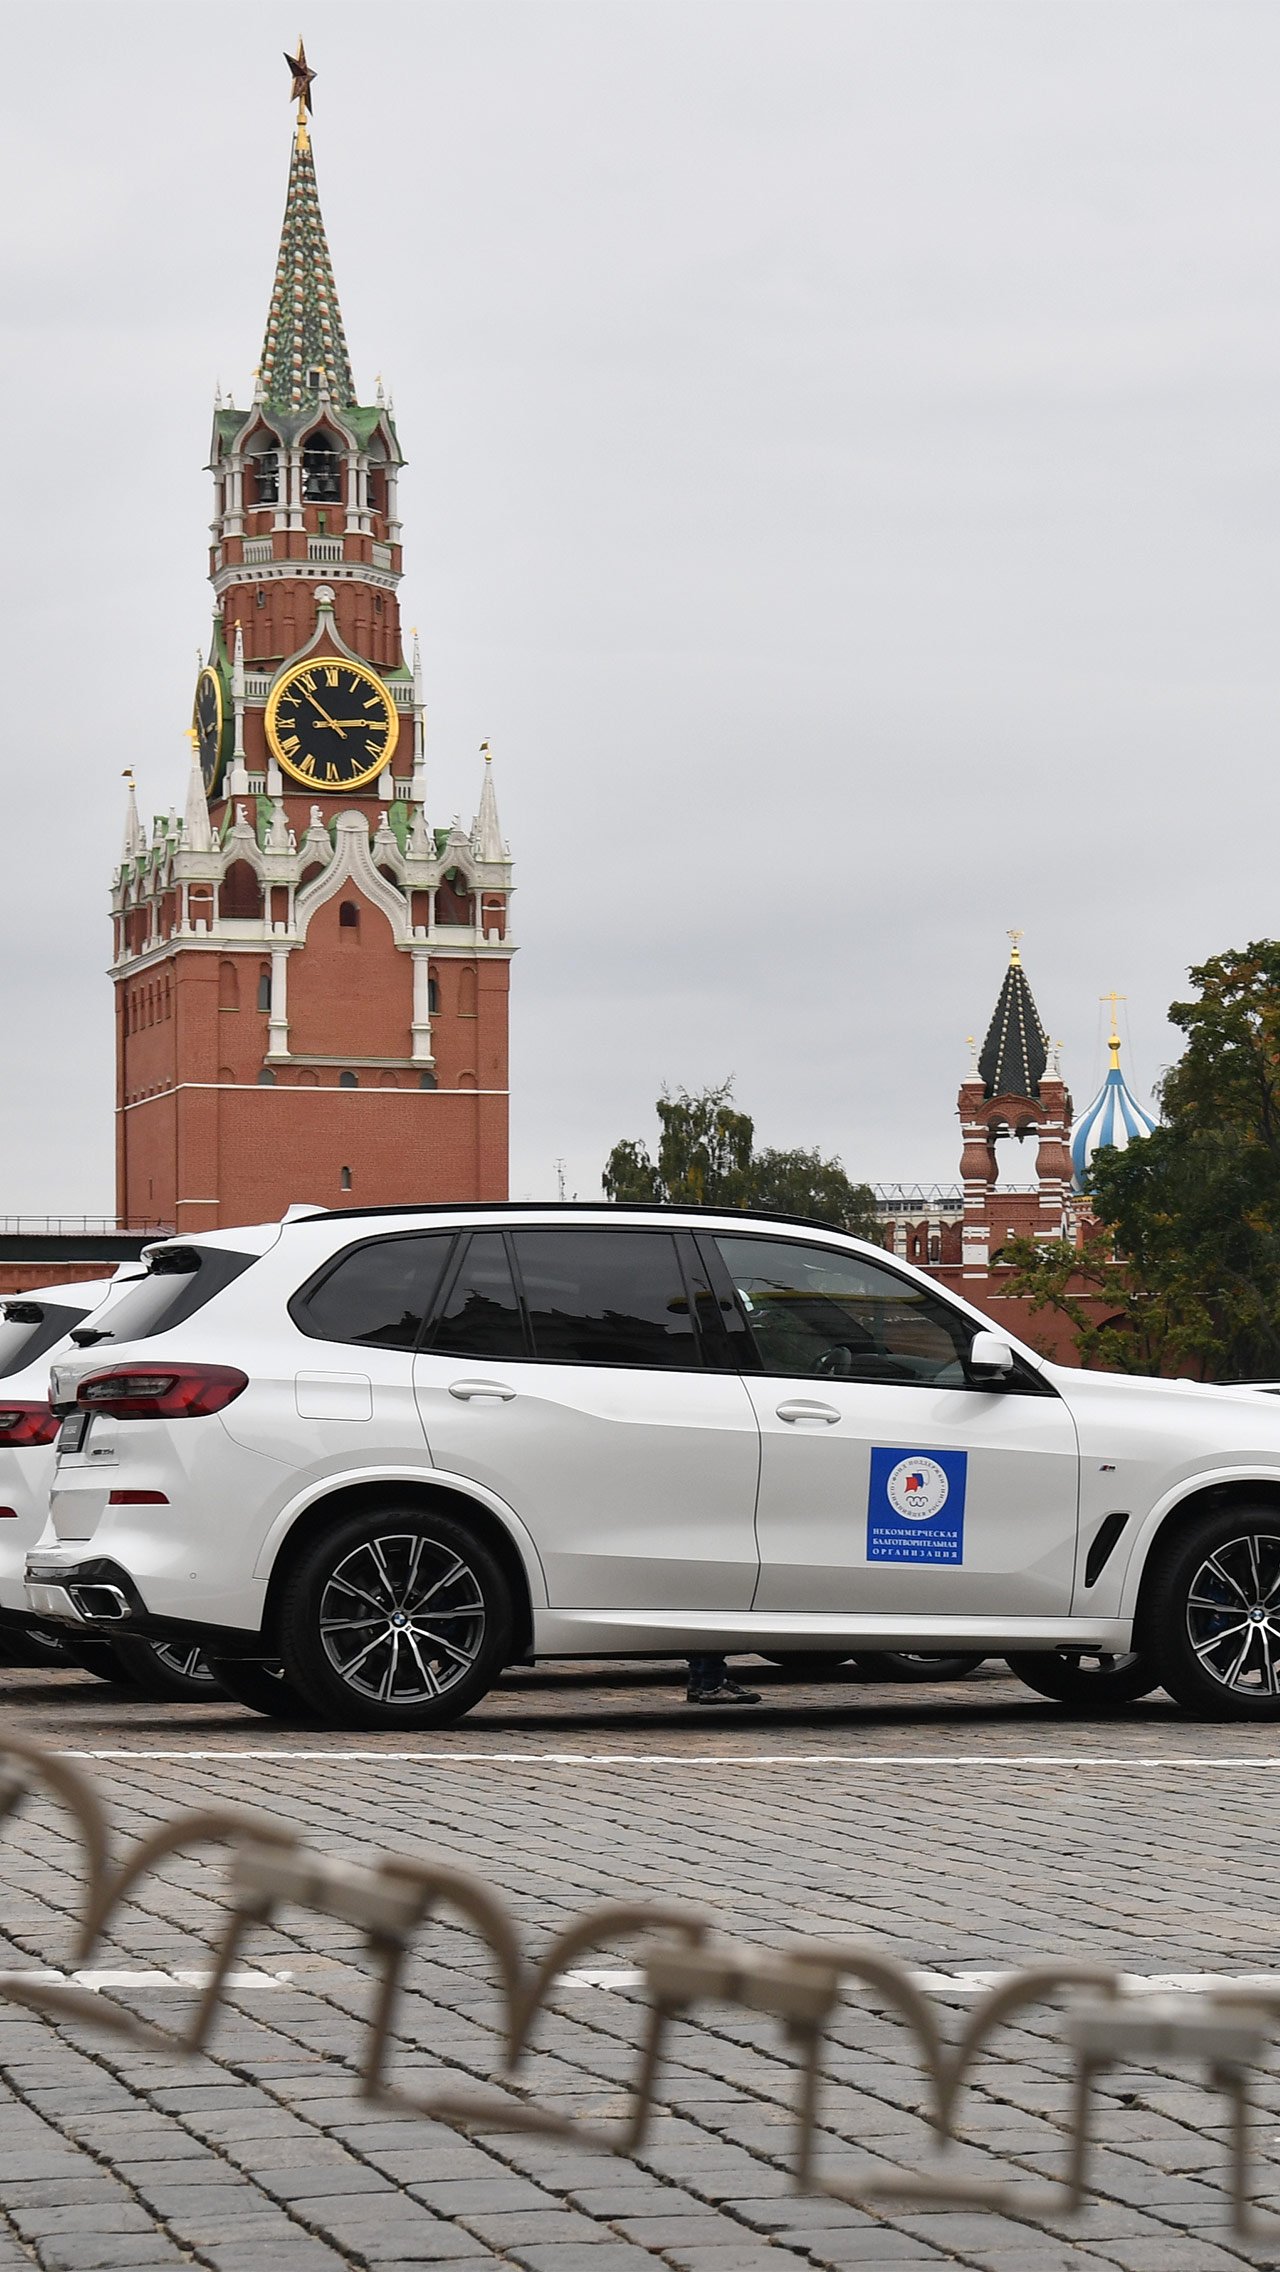 Средняя цена автомобиля BMW X5, который получат олимпийские чемпионы Токио – 5,9 млн рублей. Это почти в два раза больше, чем стоимость Land Cruiser 100, который дарили олимпийцам в 2006-м.